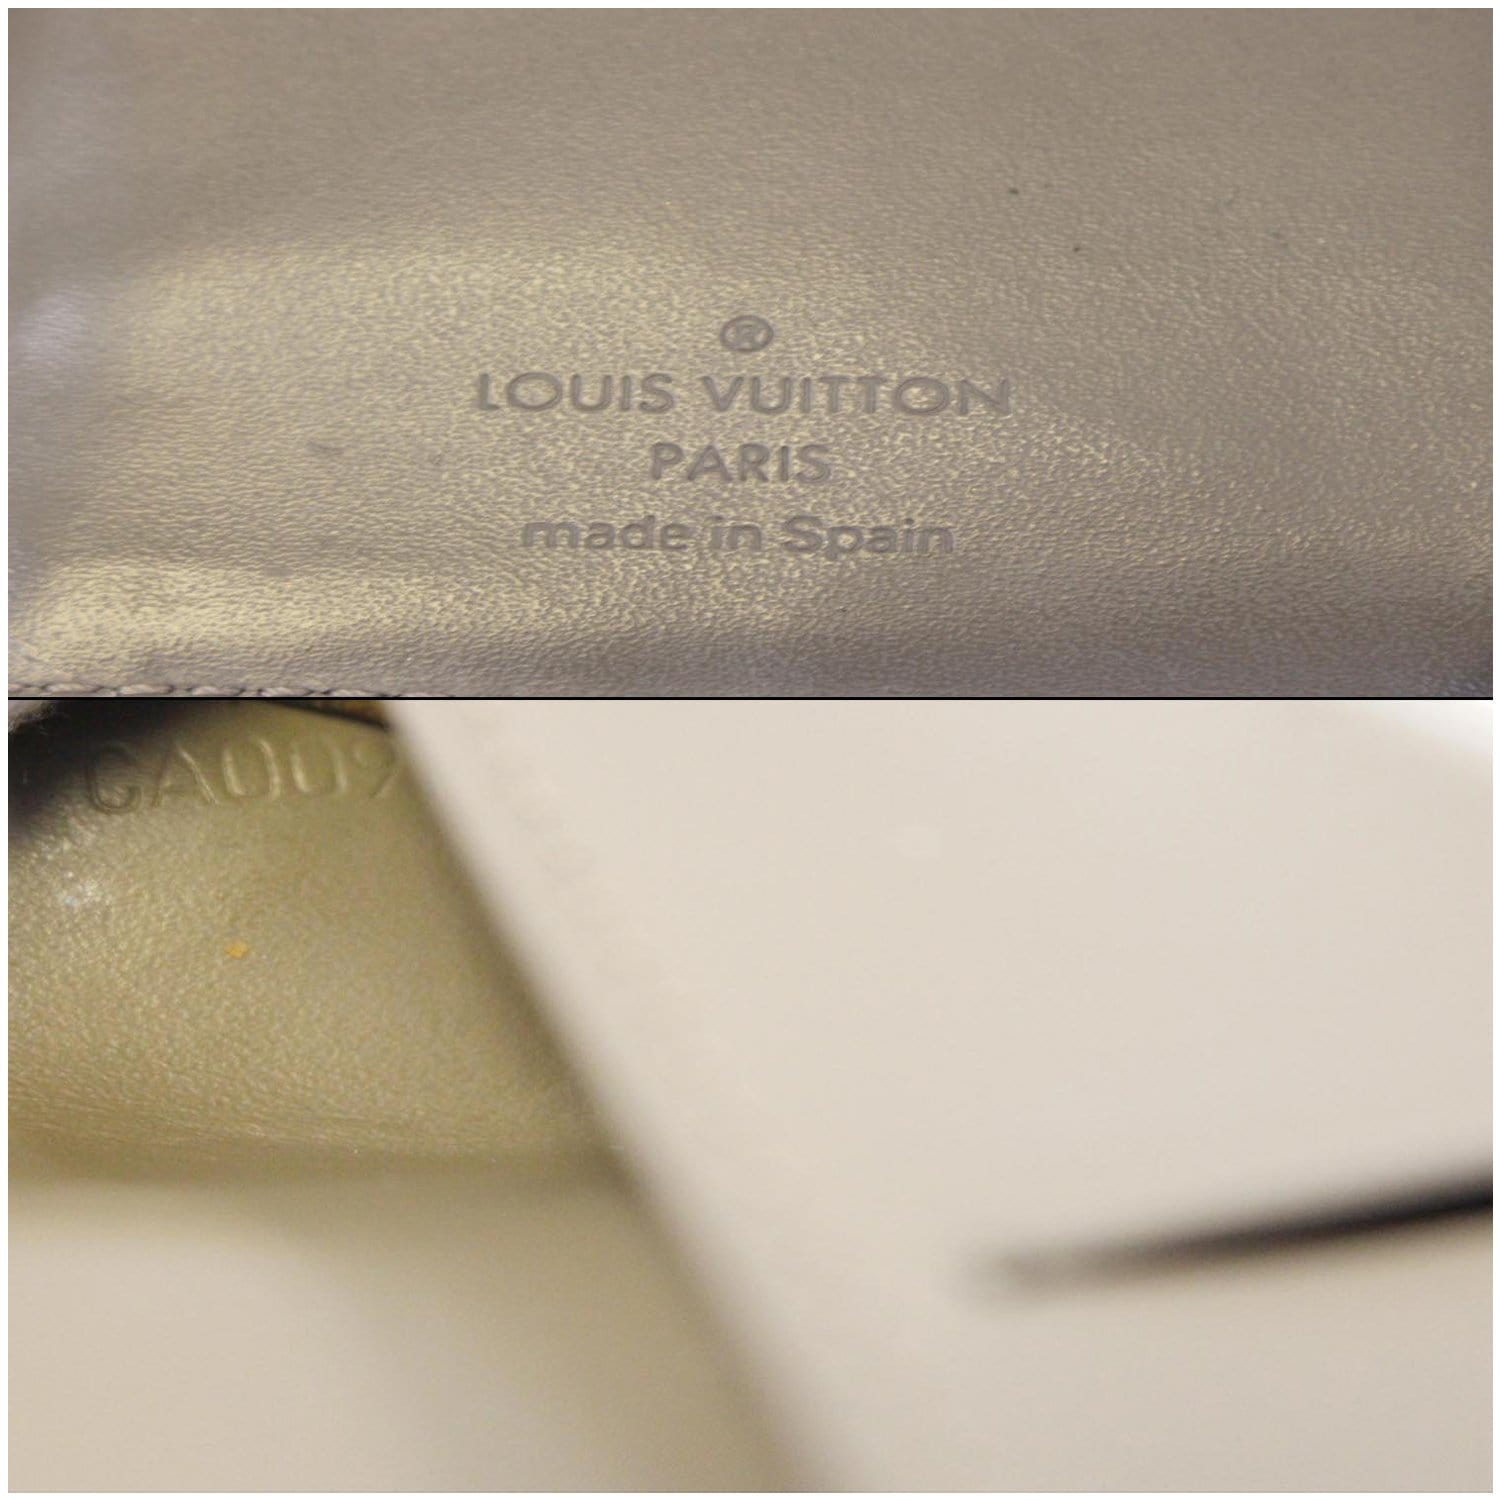 Louis Vuitton Dust Cover 6 3/4”W x 4 3/4T